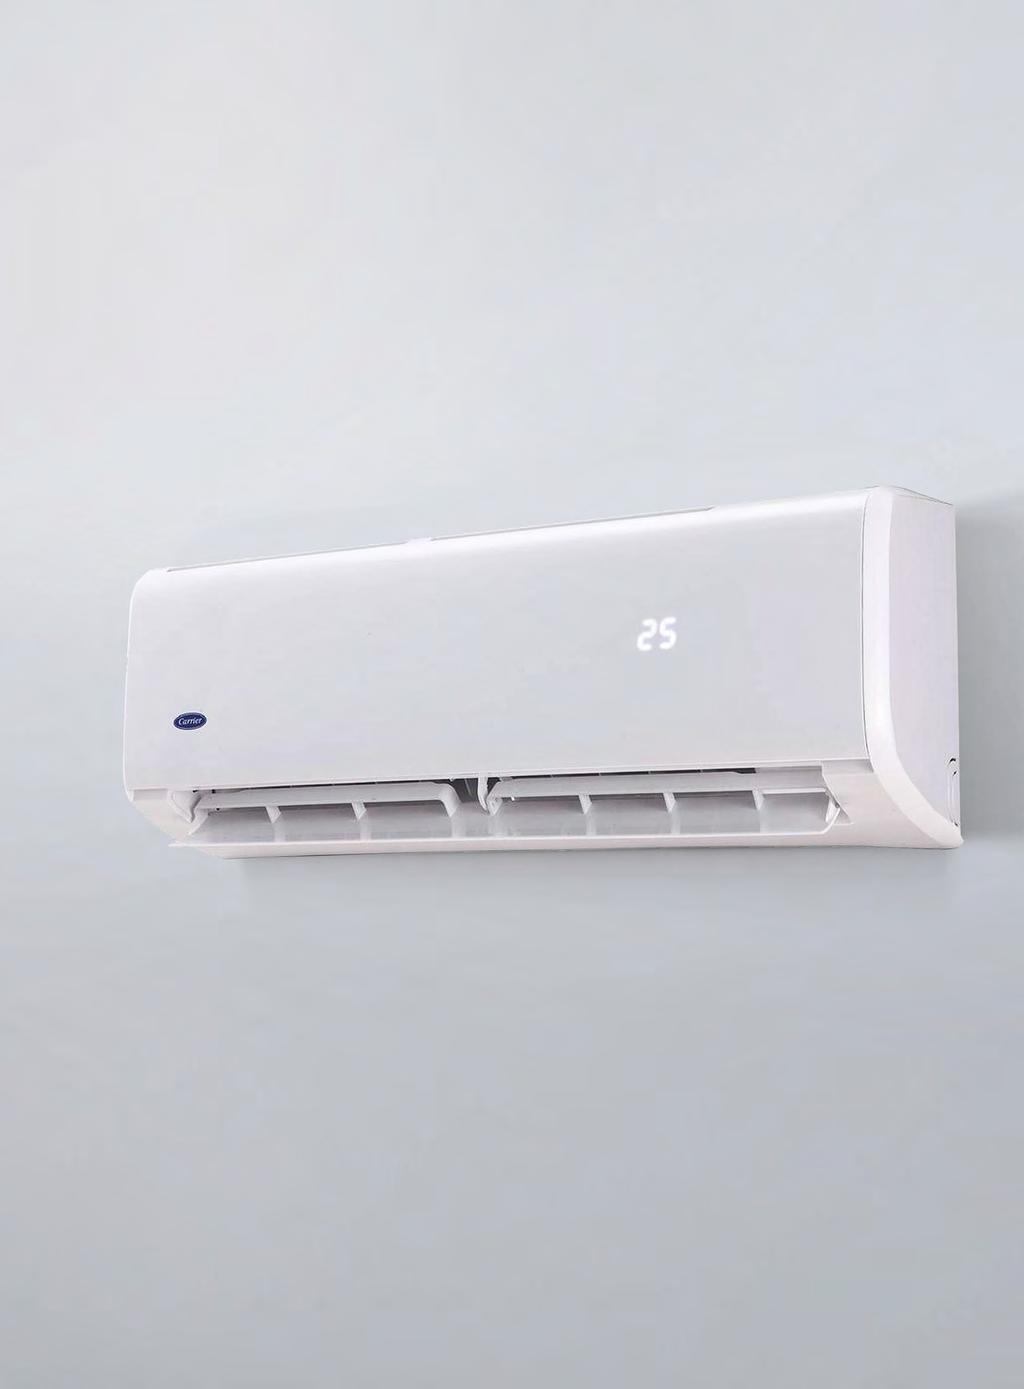 Klimatyzatory mieszkaniowe Systemy Single Split JEDNOSTKI ŚCIENNE GOLD INVERTER HI-WALL 42QHC/38QHC-ES Wyższa oszczędność energii dzięki super wydajnej sprężarce.